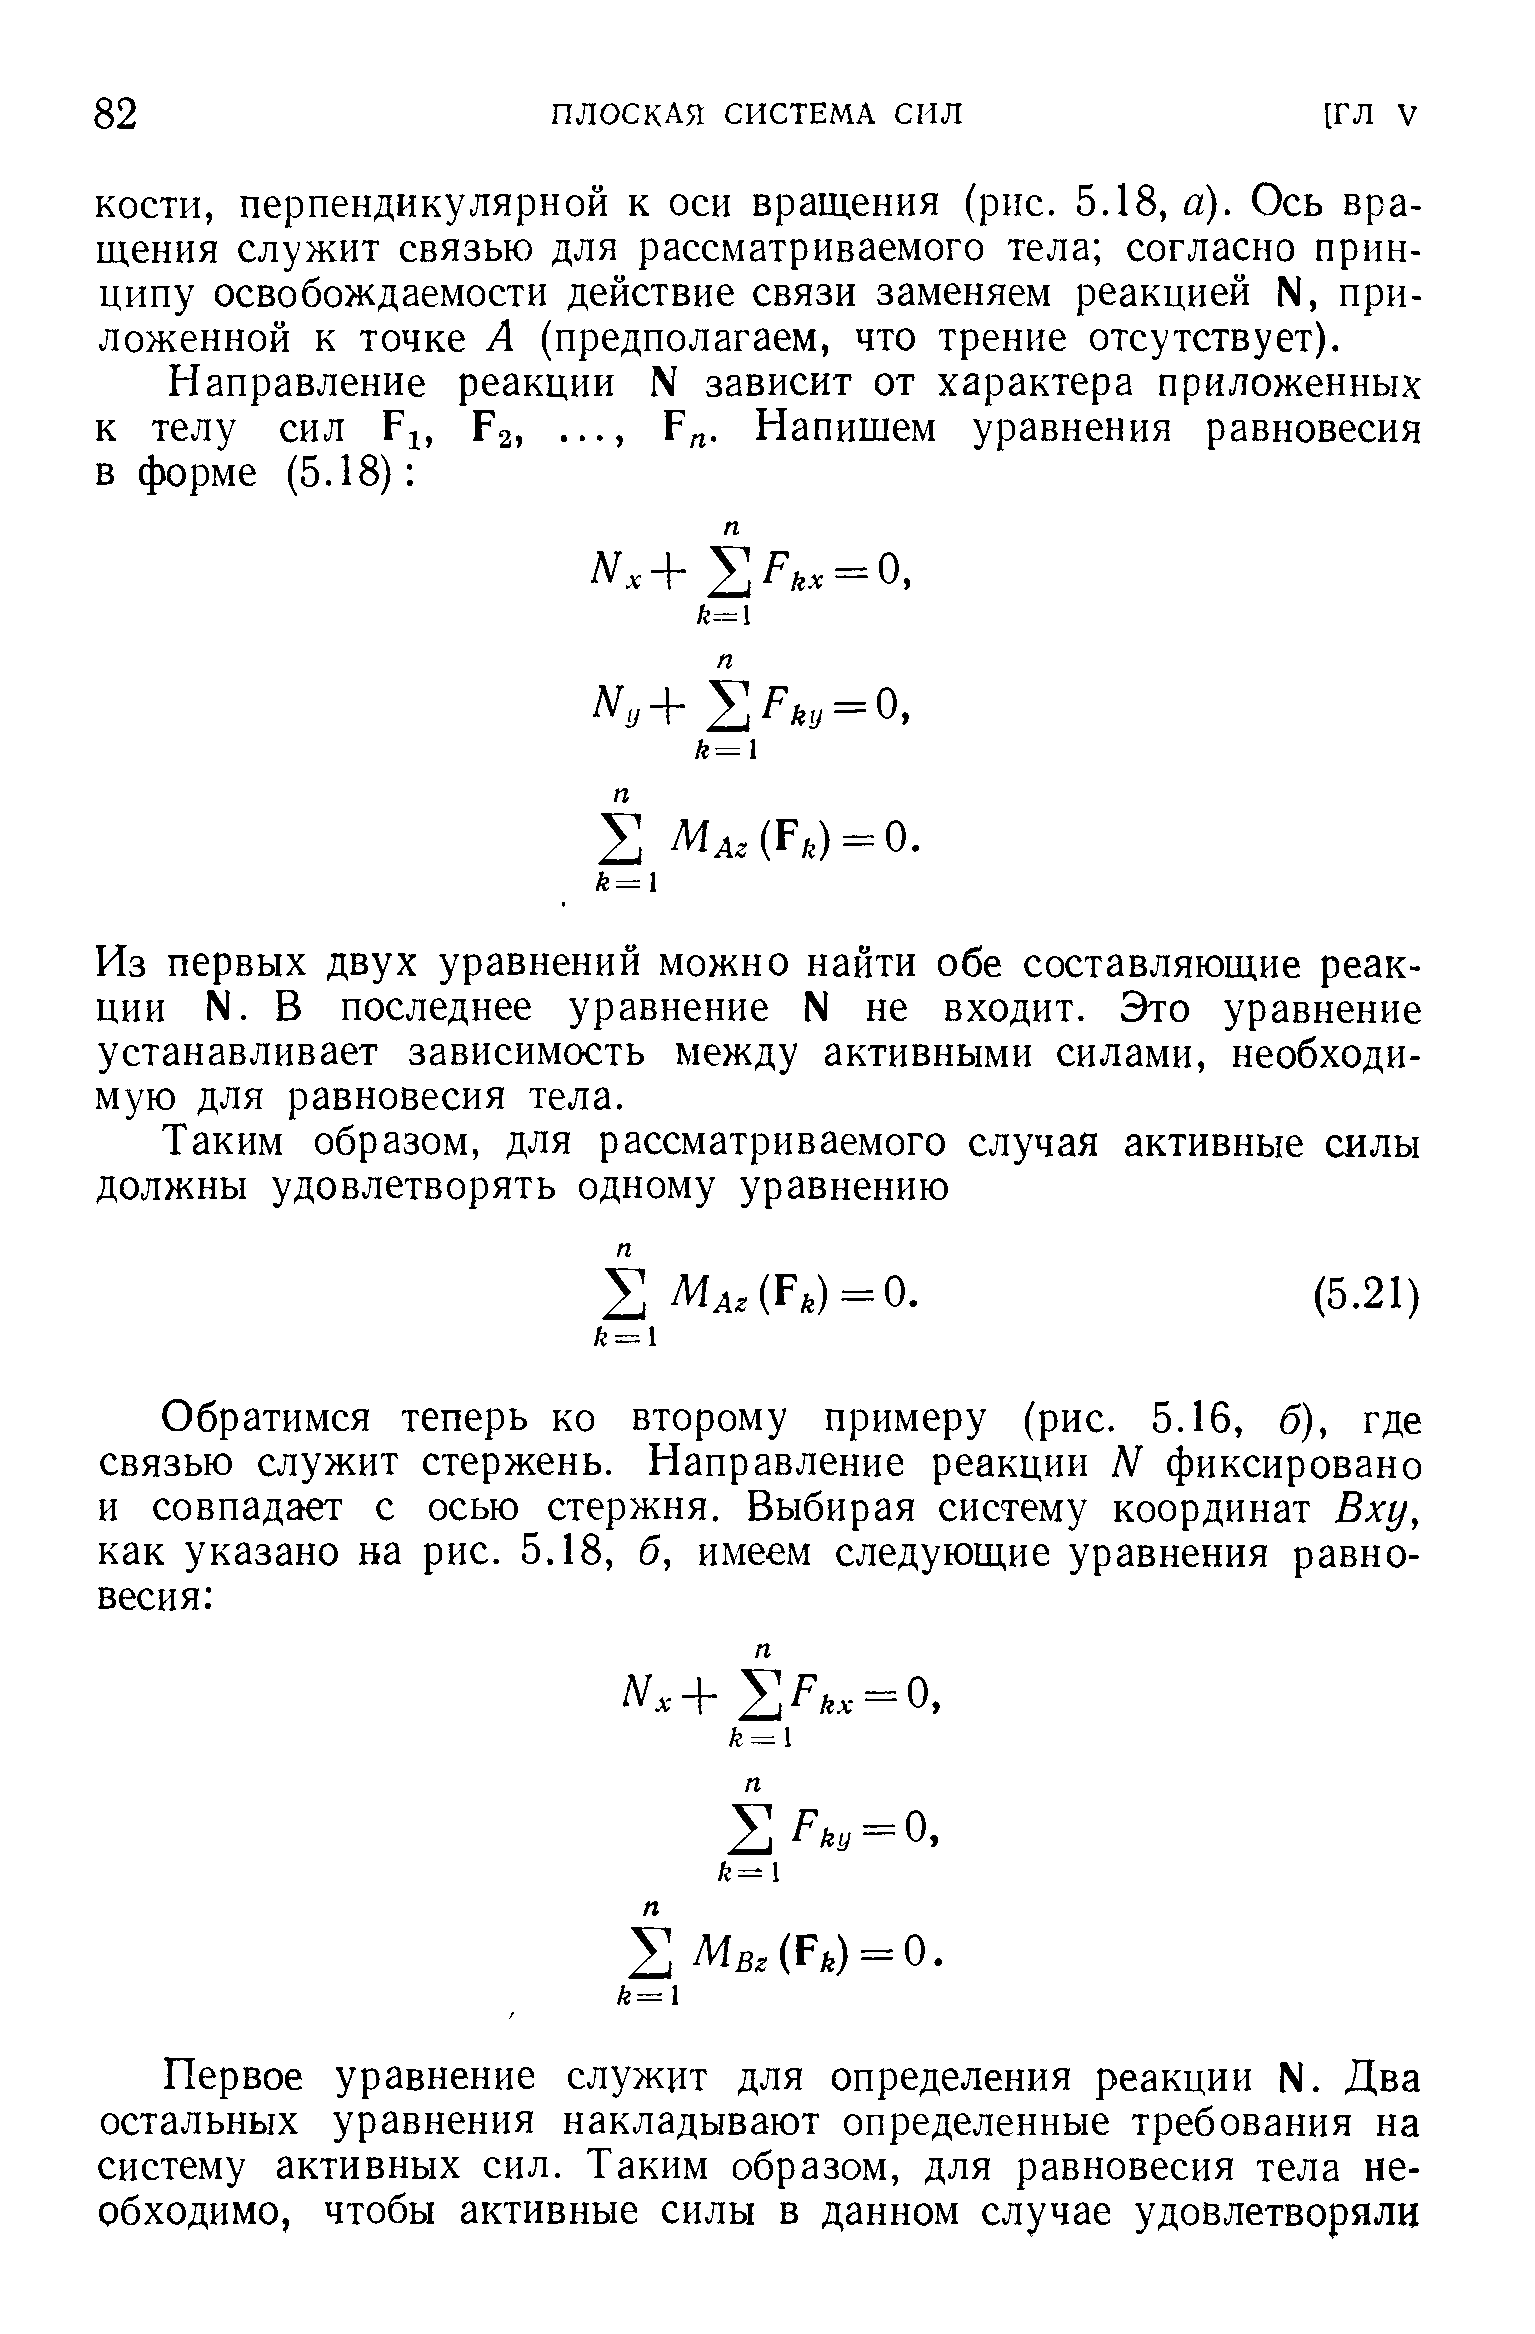 Из первых двух уравнений можно найти обе составляющие реакции N. В последнее уравнение N не входит. Это уравнение устанавливает зависимость между активными силами, необходимую для равновесия тела.
